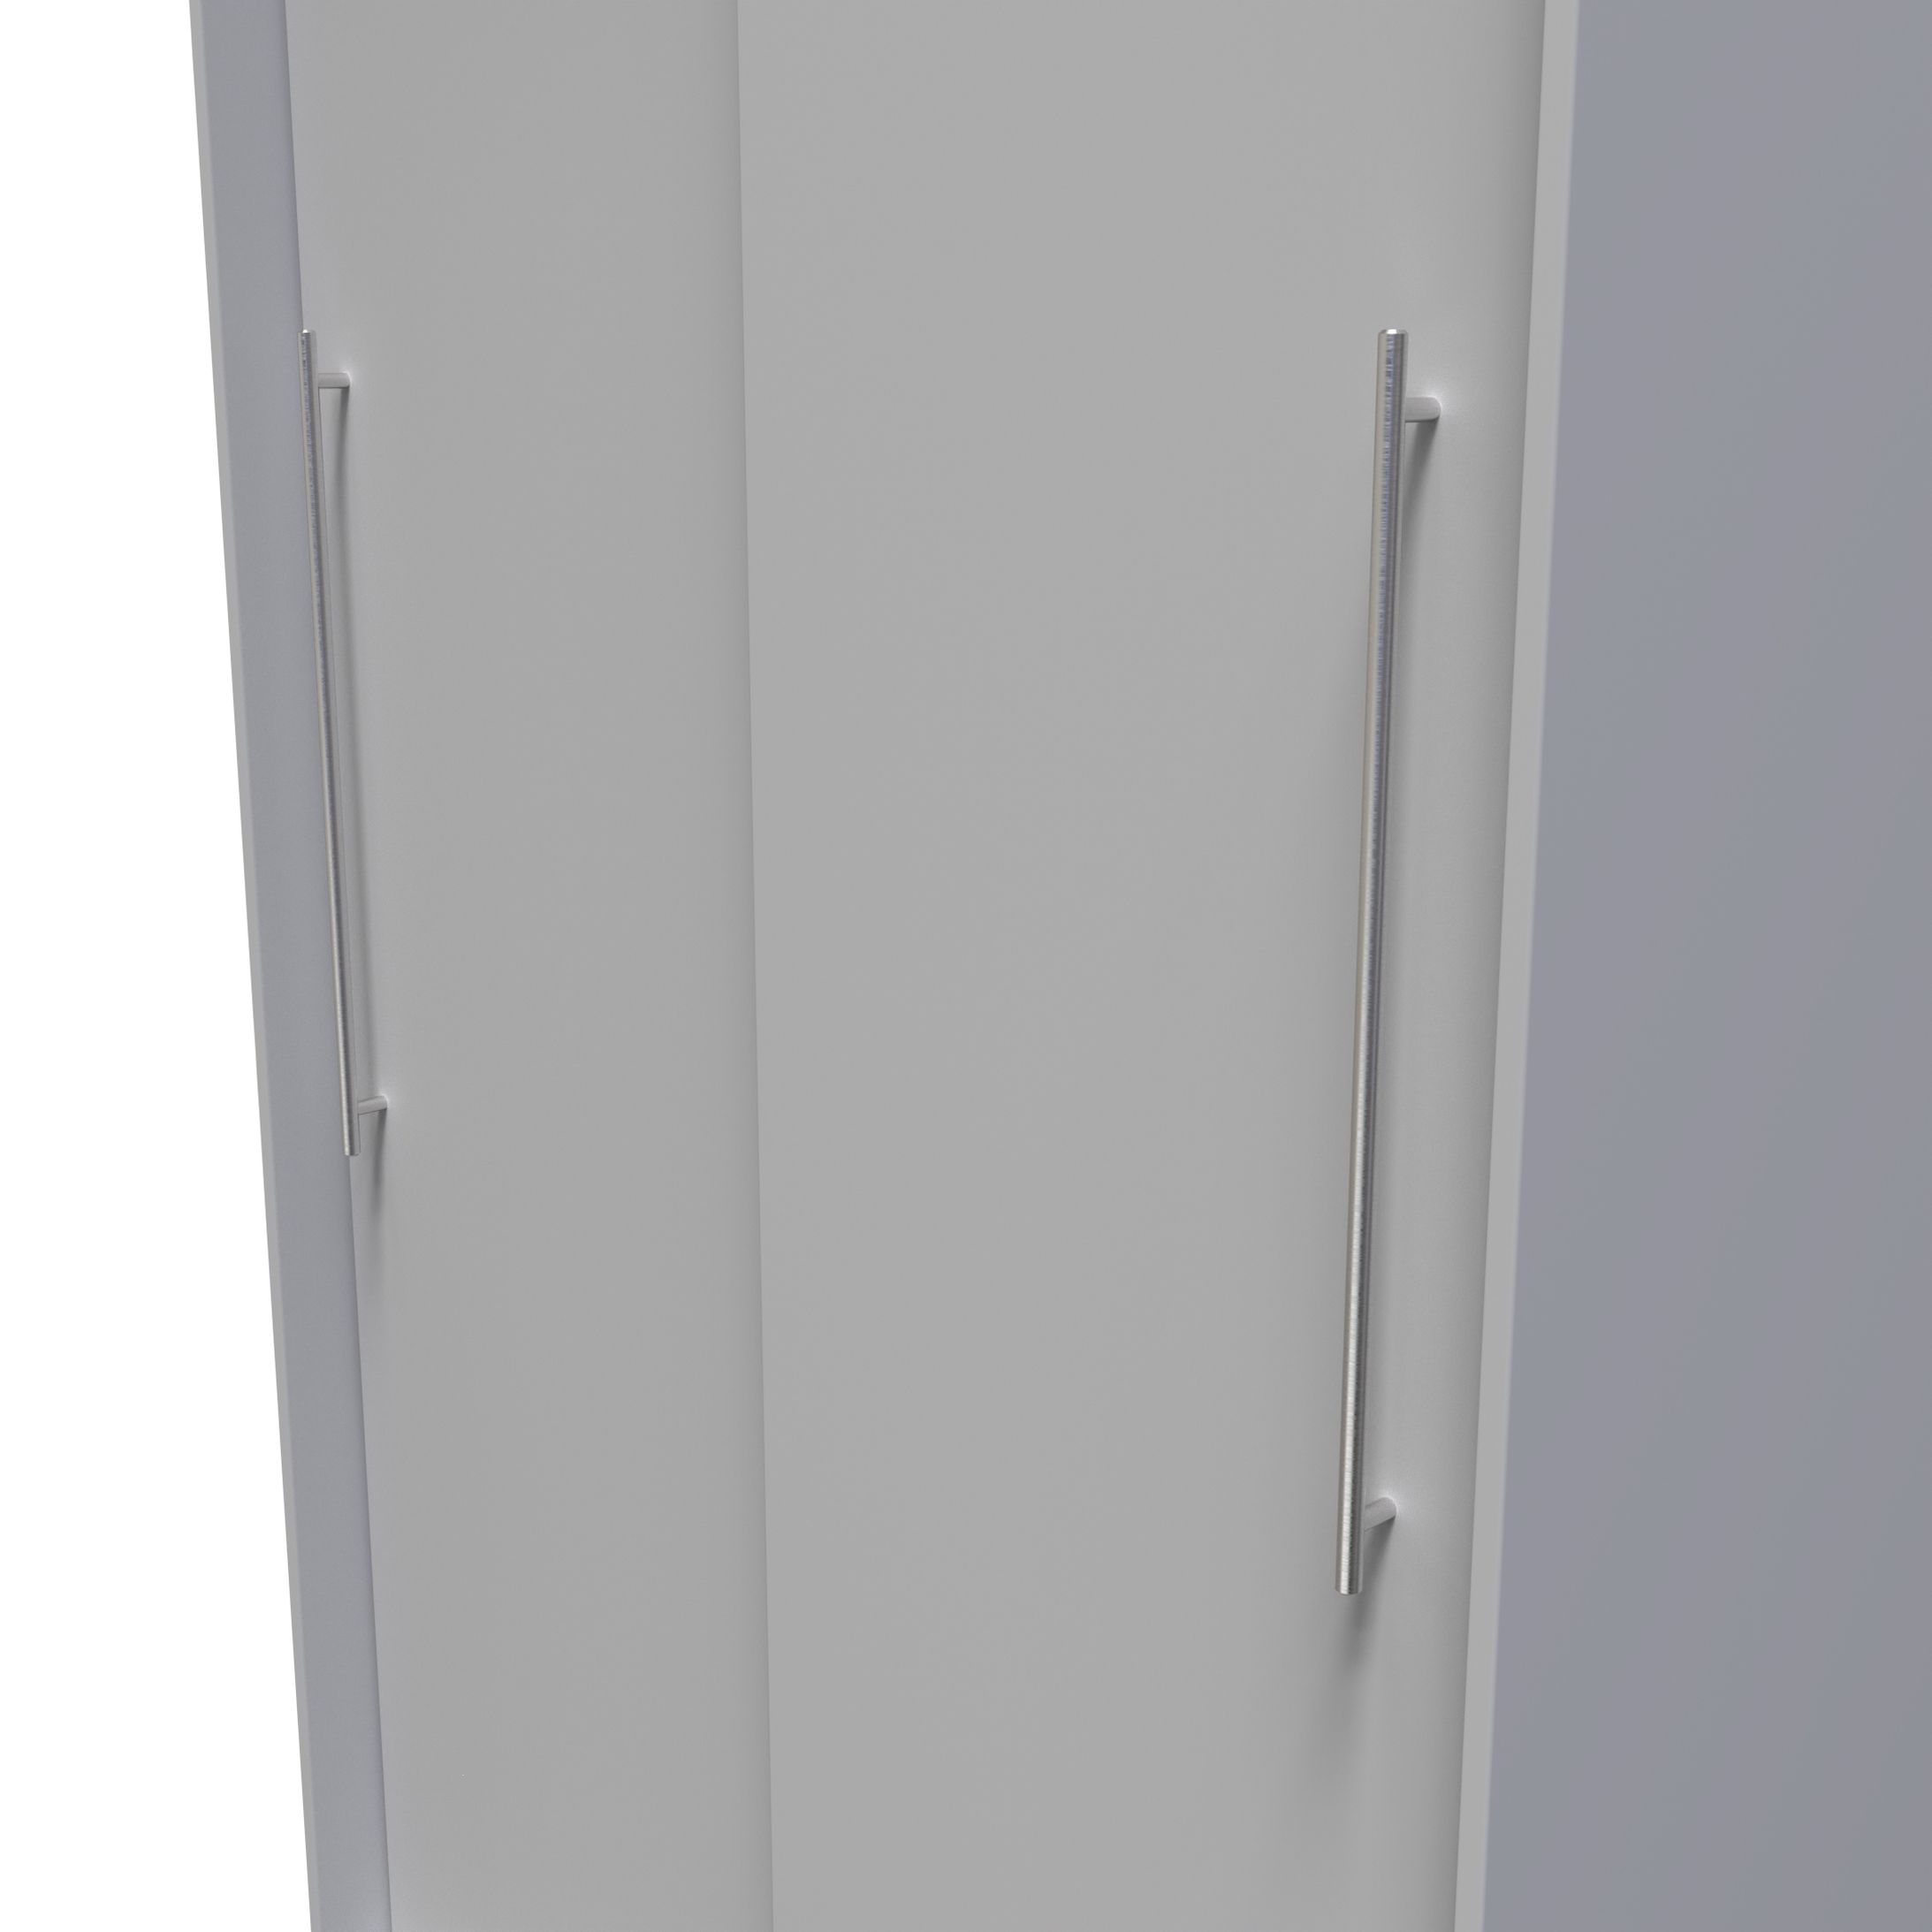 Sherwood Ready assembled Contemporary Matt Grey matt Double Sliding door wardrobe (H)1975mm (W)1005mm (D)600mm